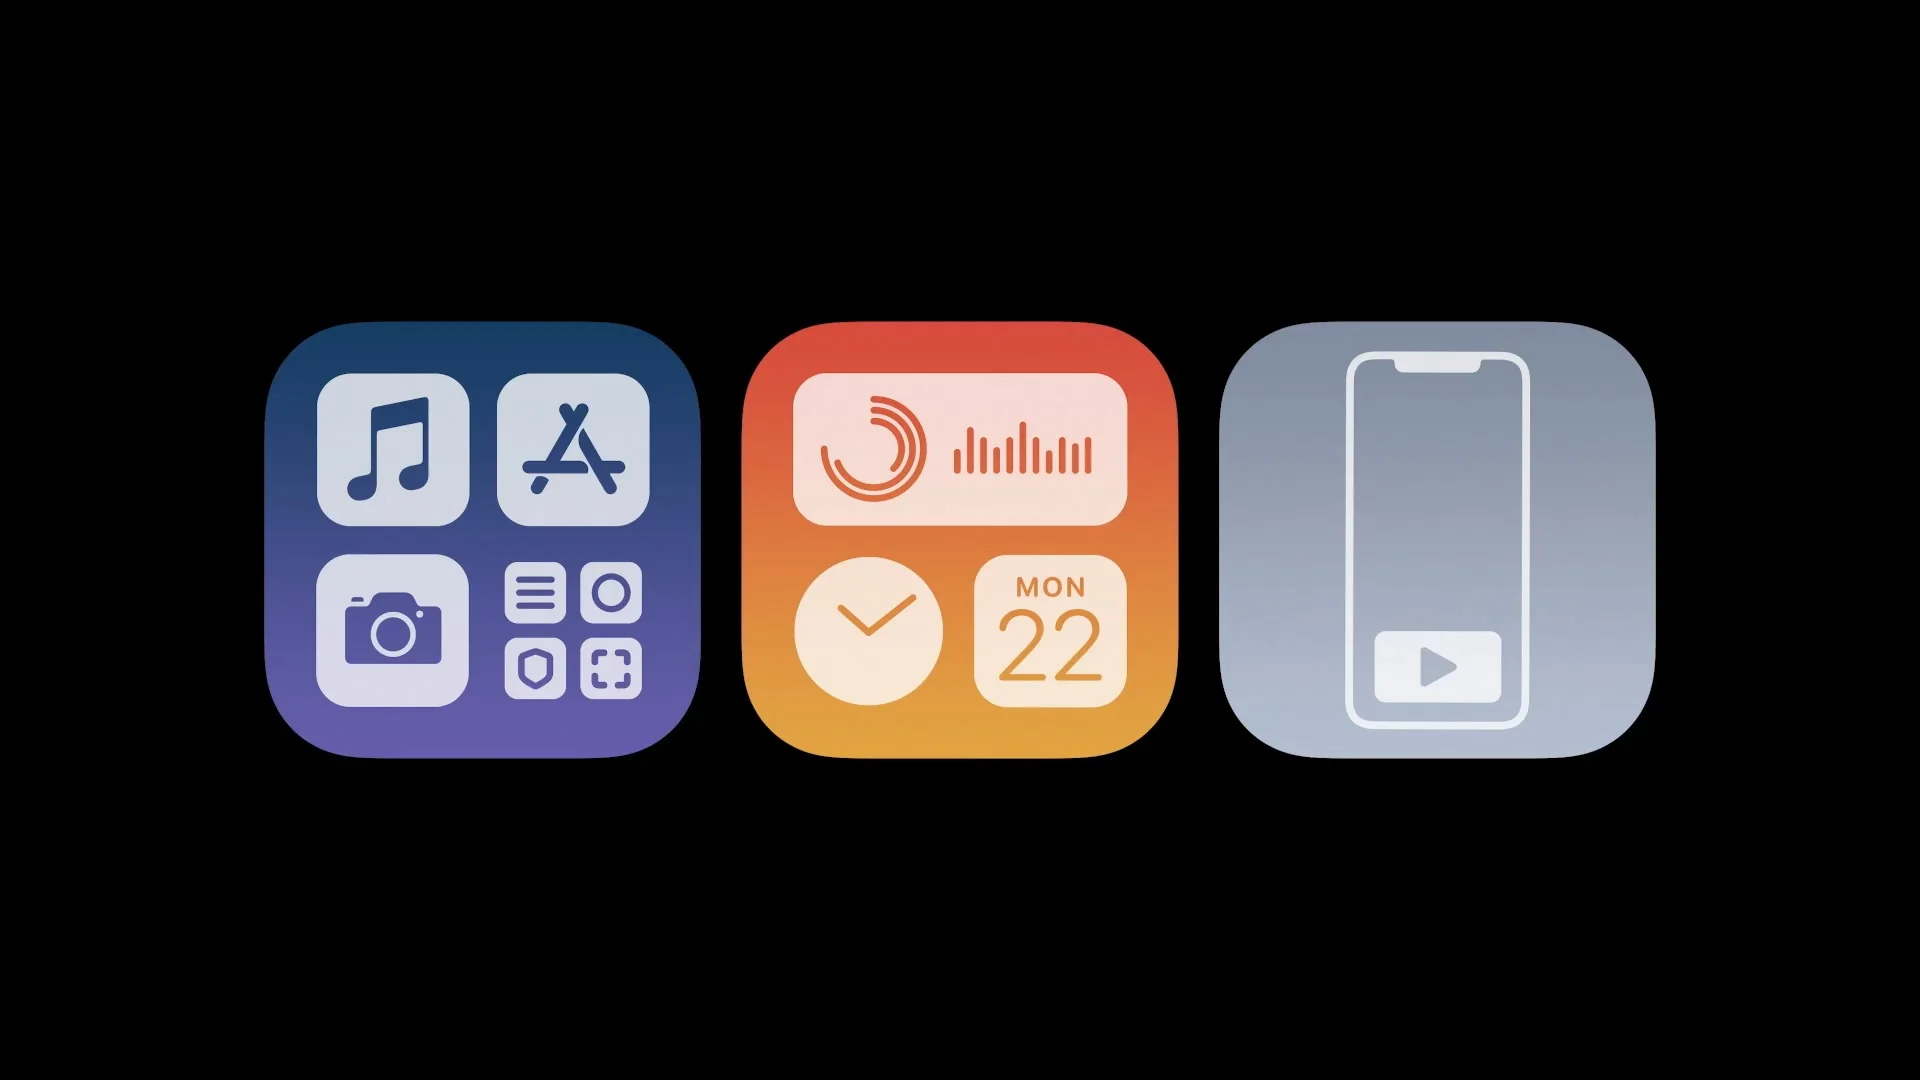 Apple представила iOS 14: группировка приложений, обновленные виджеты, картинка в картинке - фото 3